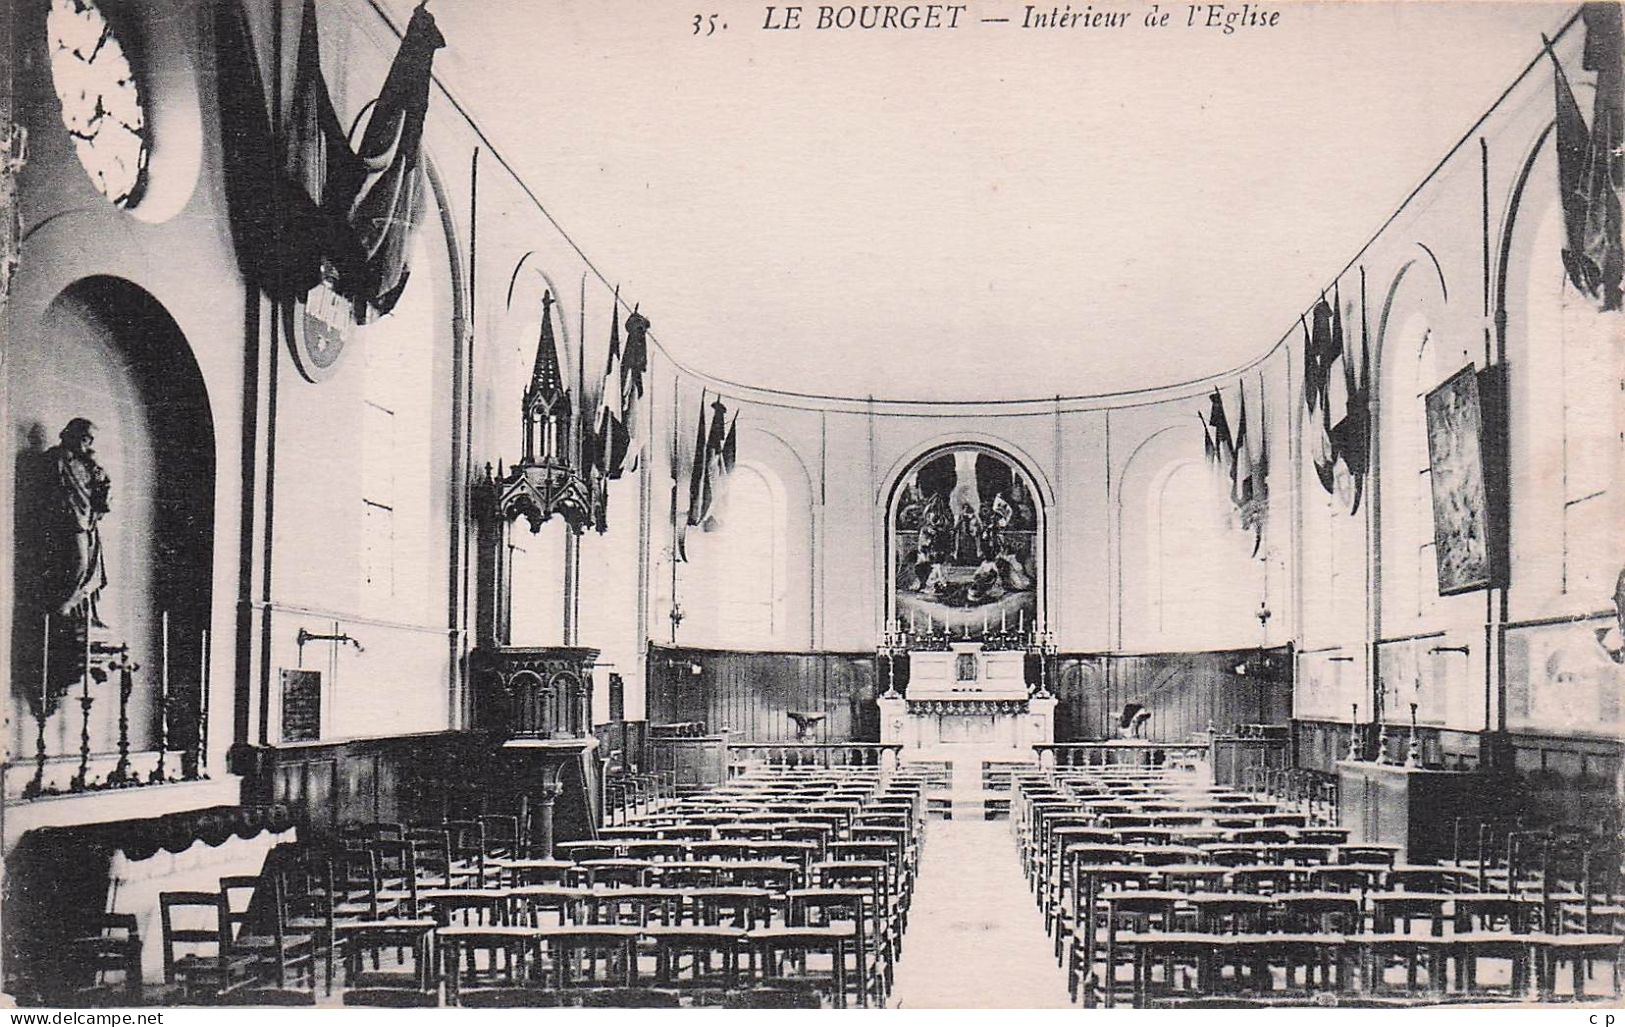 Le Bourget - Interieur De L'Eglise -  CPA °J - Le Bourget